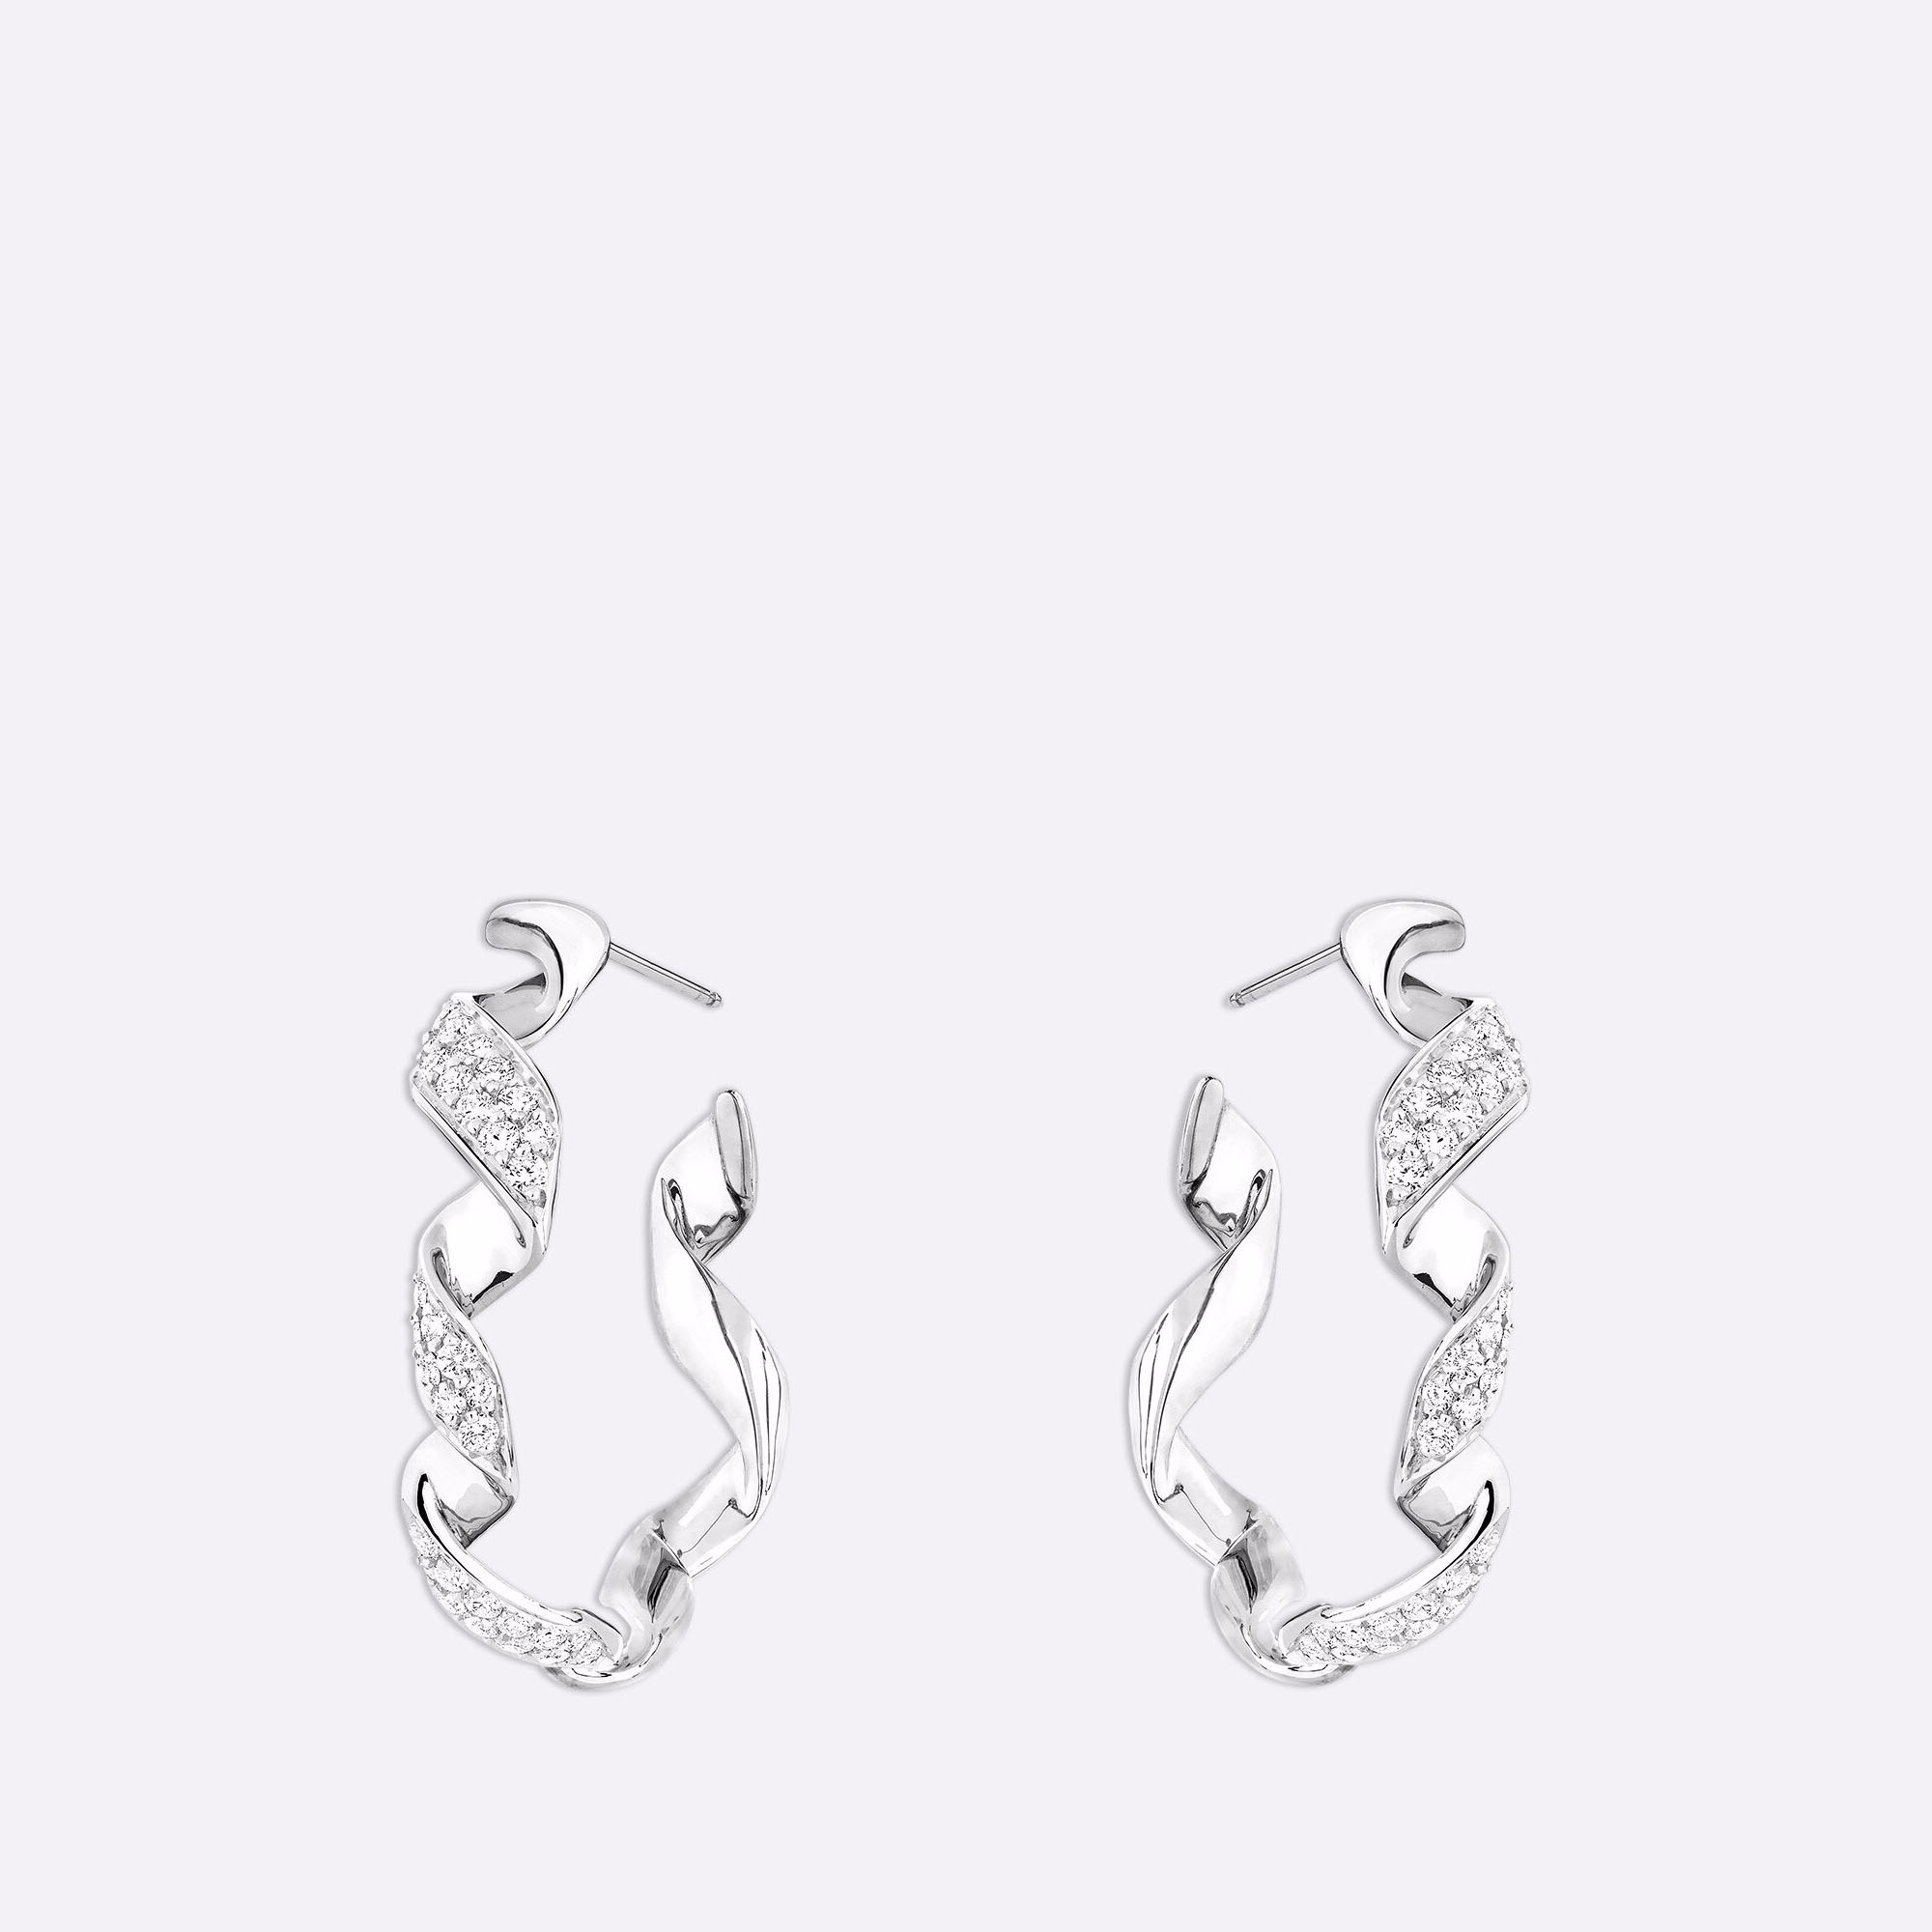 Perhiasan OEM/ODM Anting desain khusus dalam Produsen Pemasok perhiasan emas putih 18k